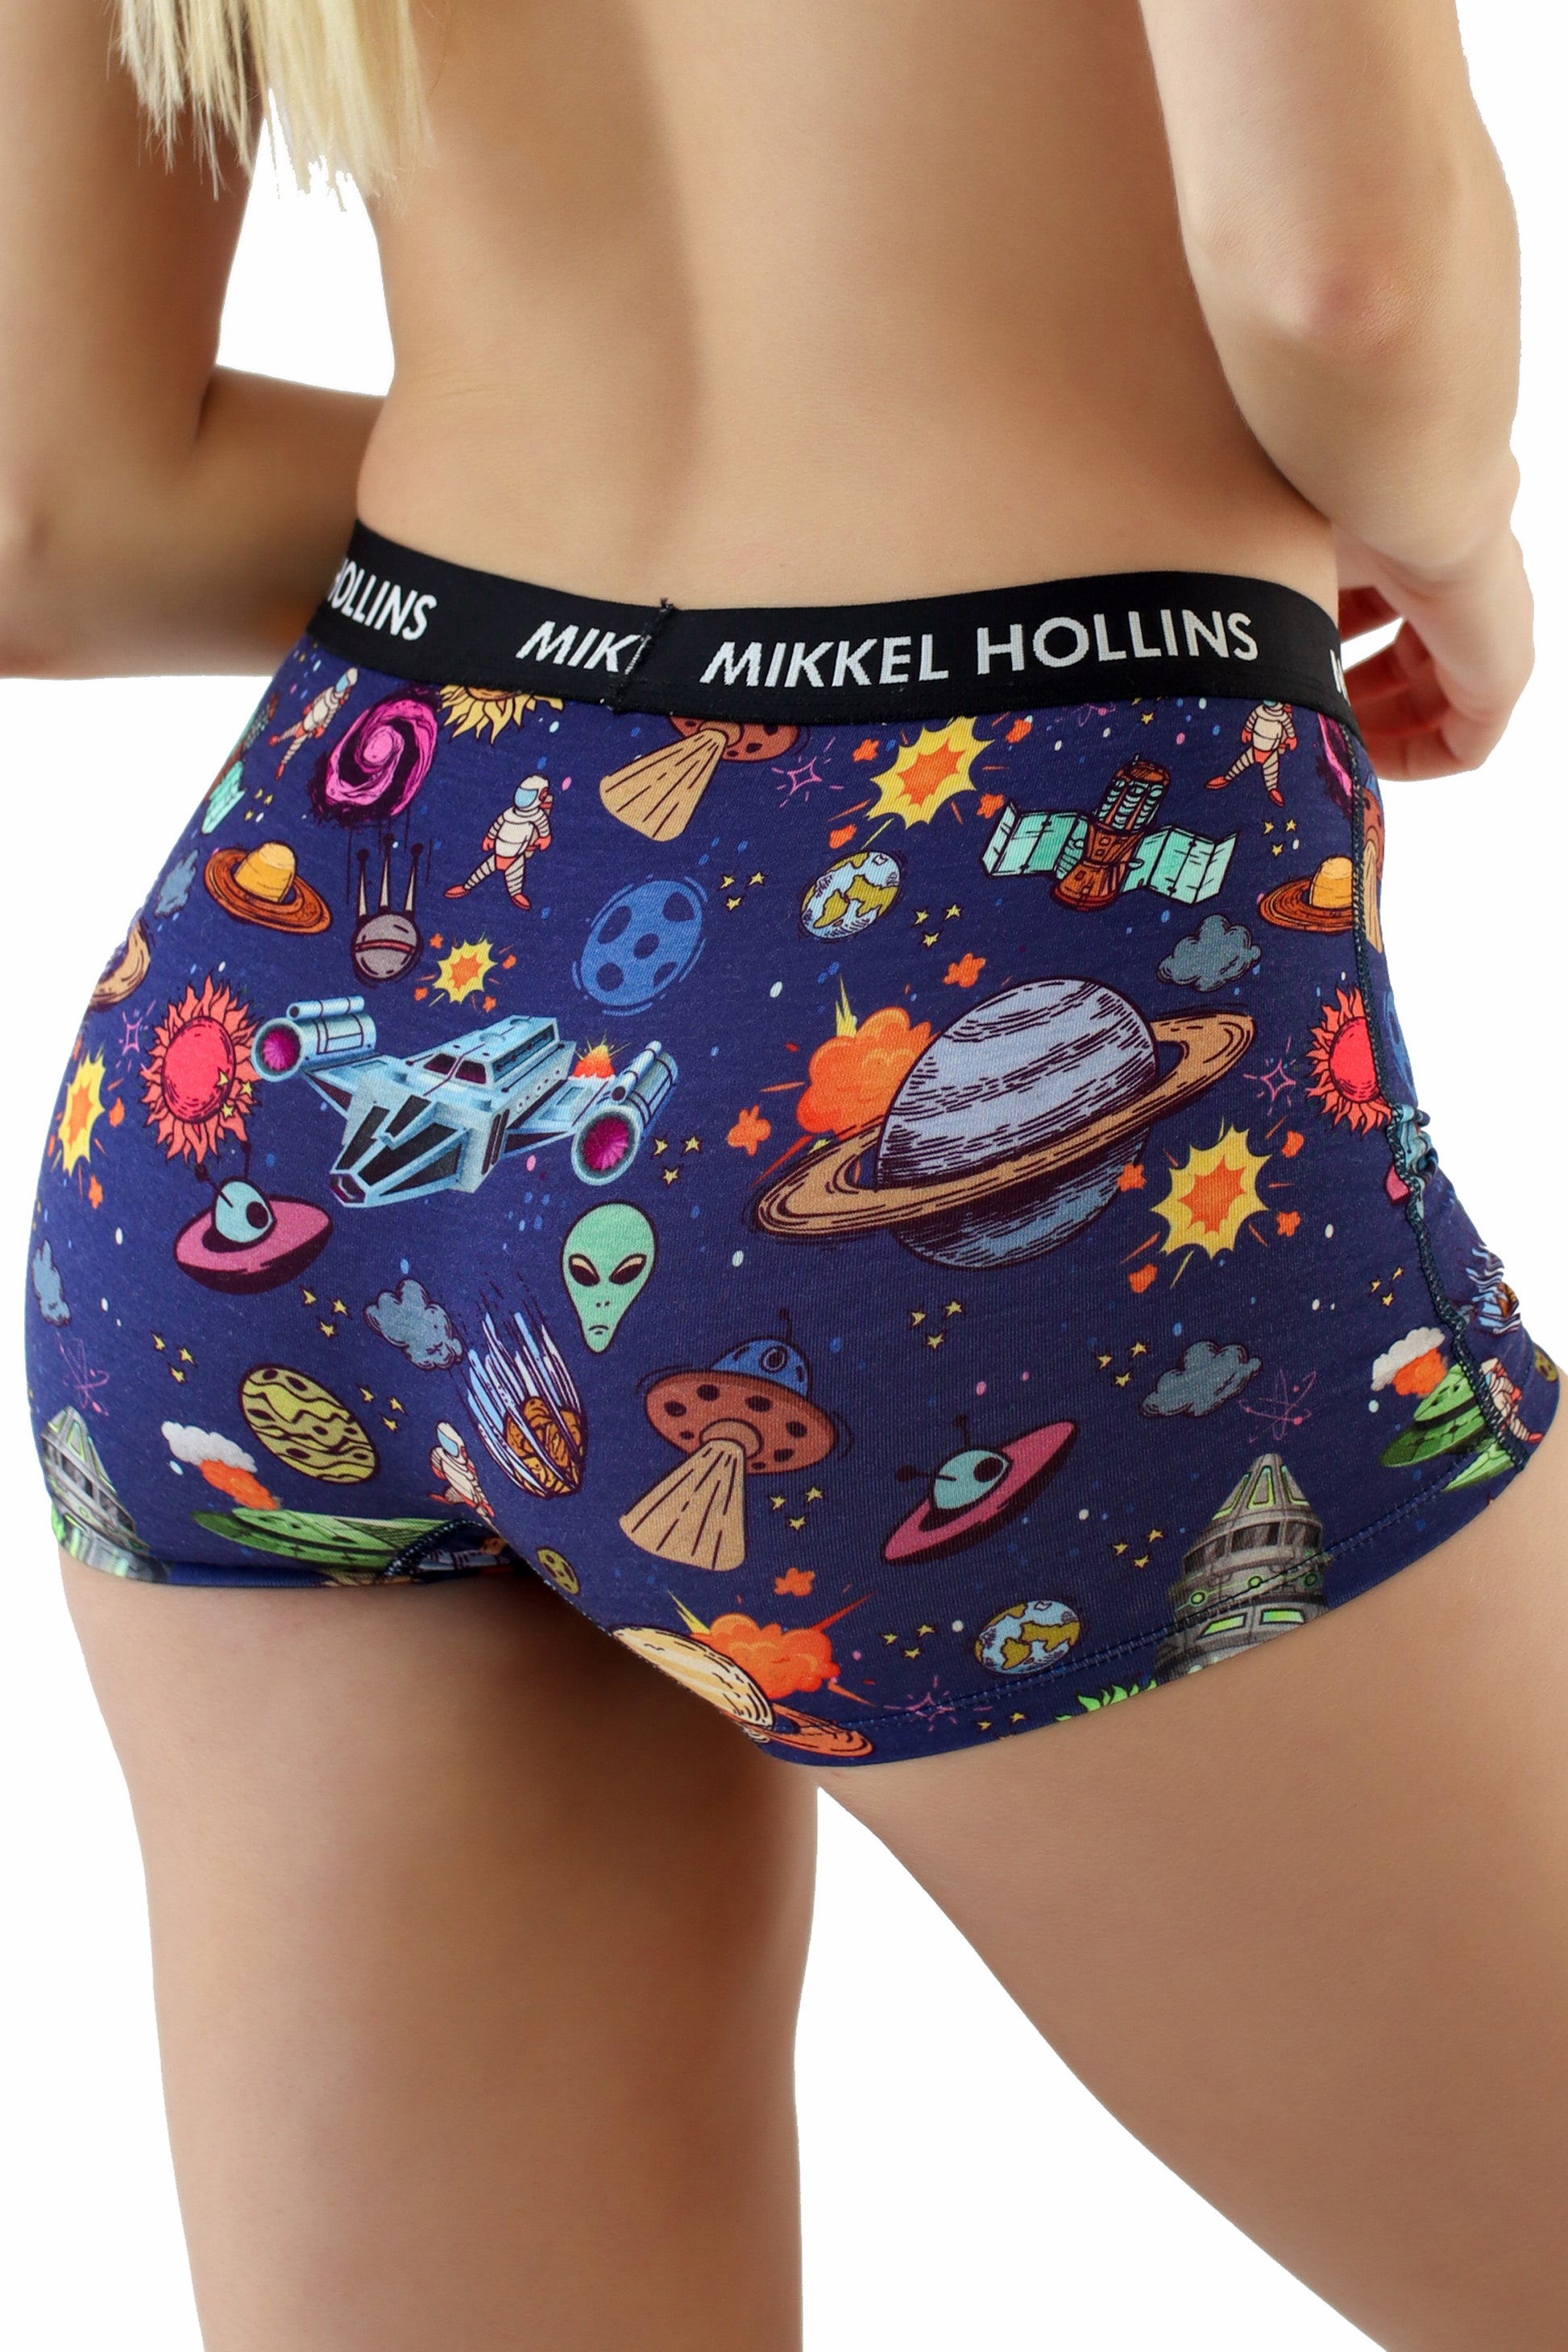 Cosmic Love - Boy Shorts Underwear For Women